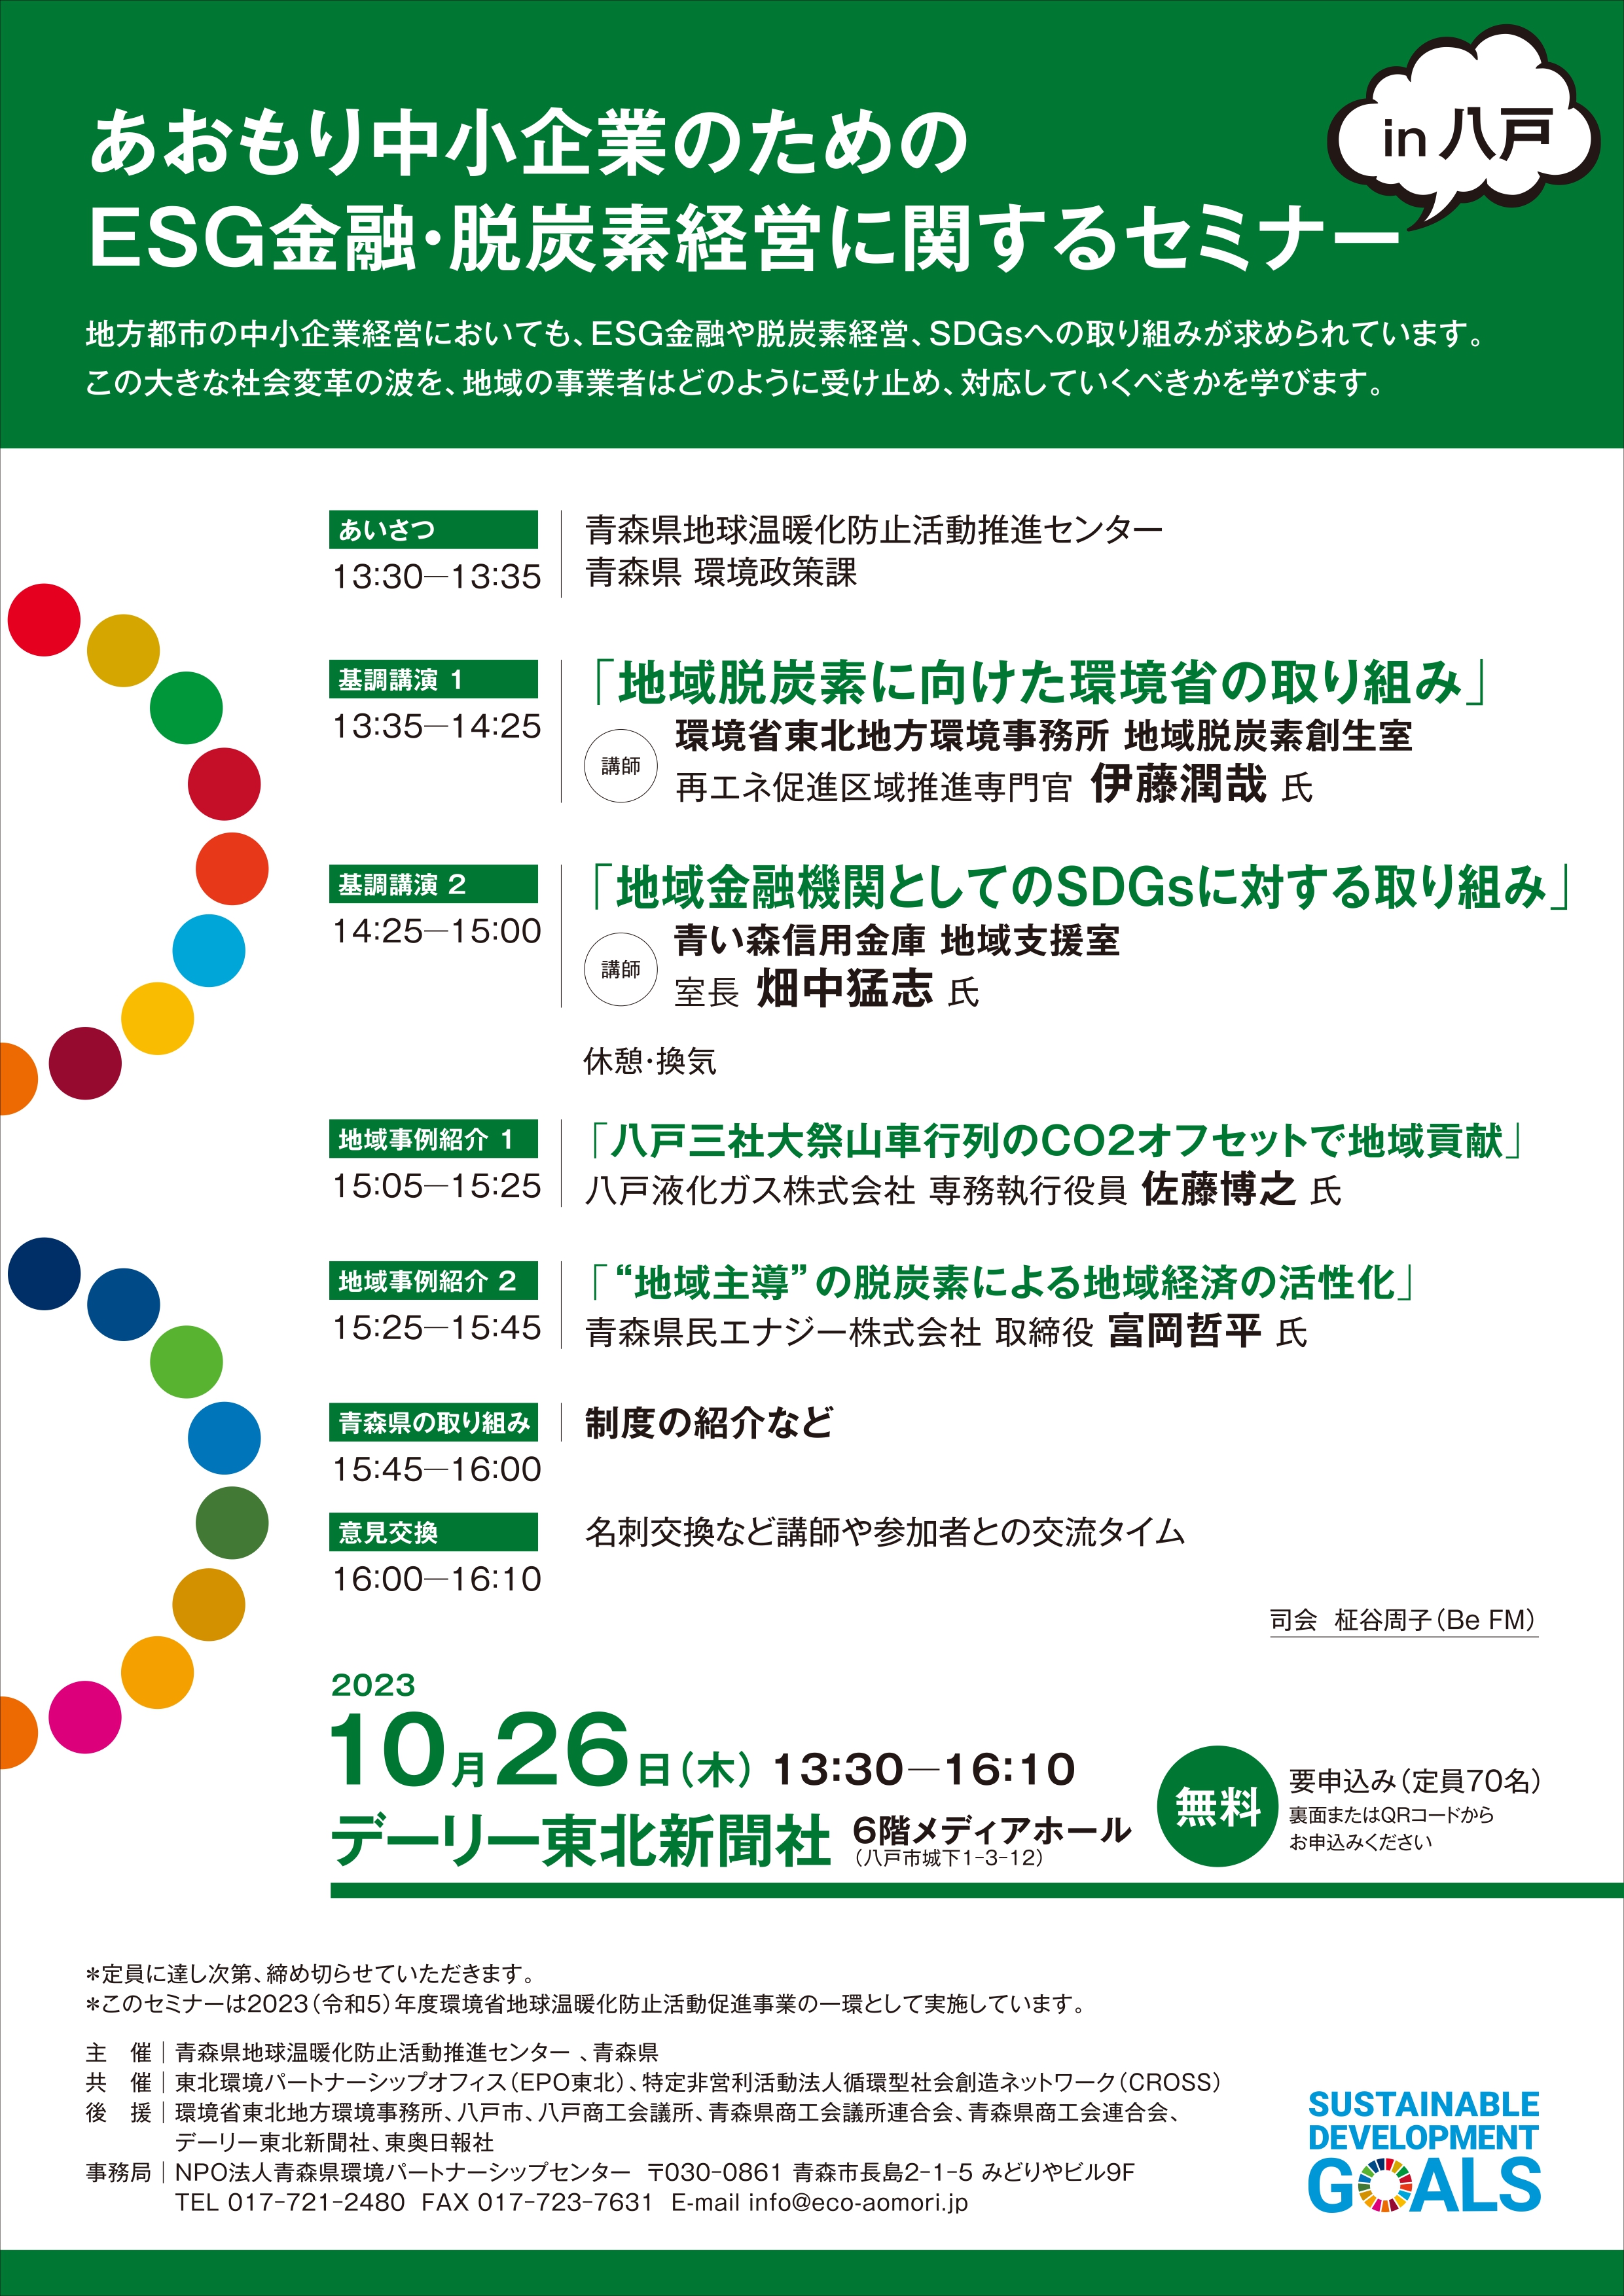  「あおもり中小企業のためのESG金融・脱炭素経営に関するセミナー in八戸」開催のお知らせ